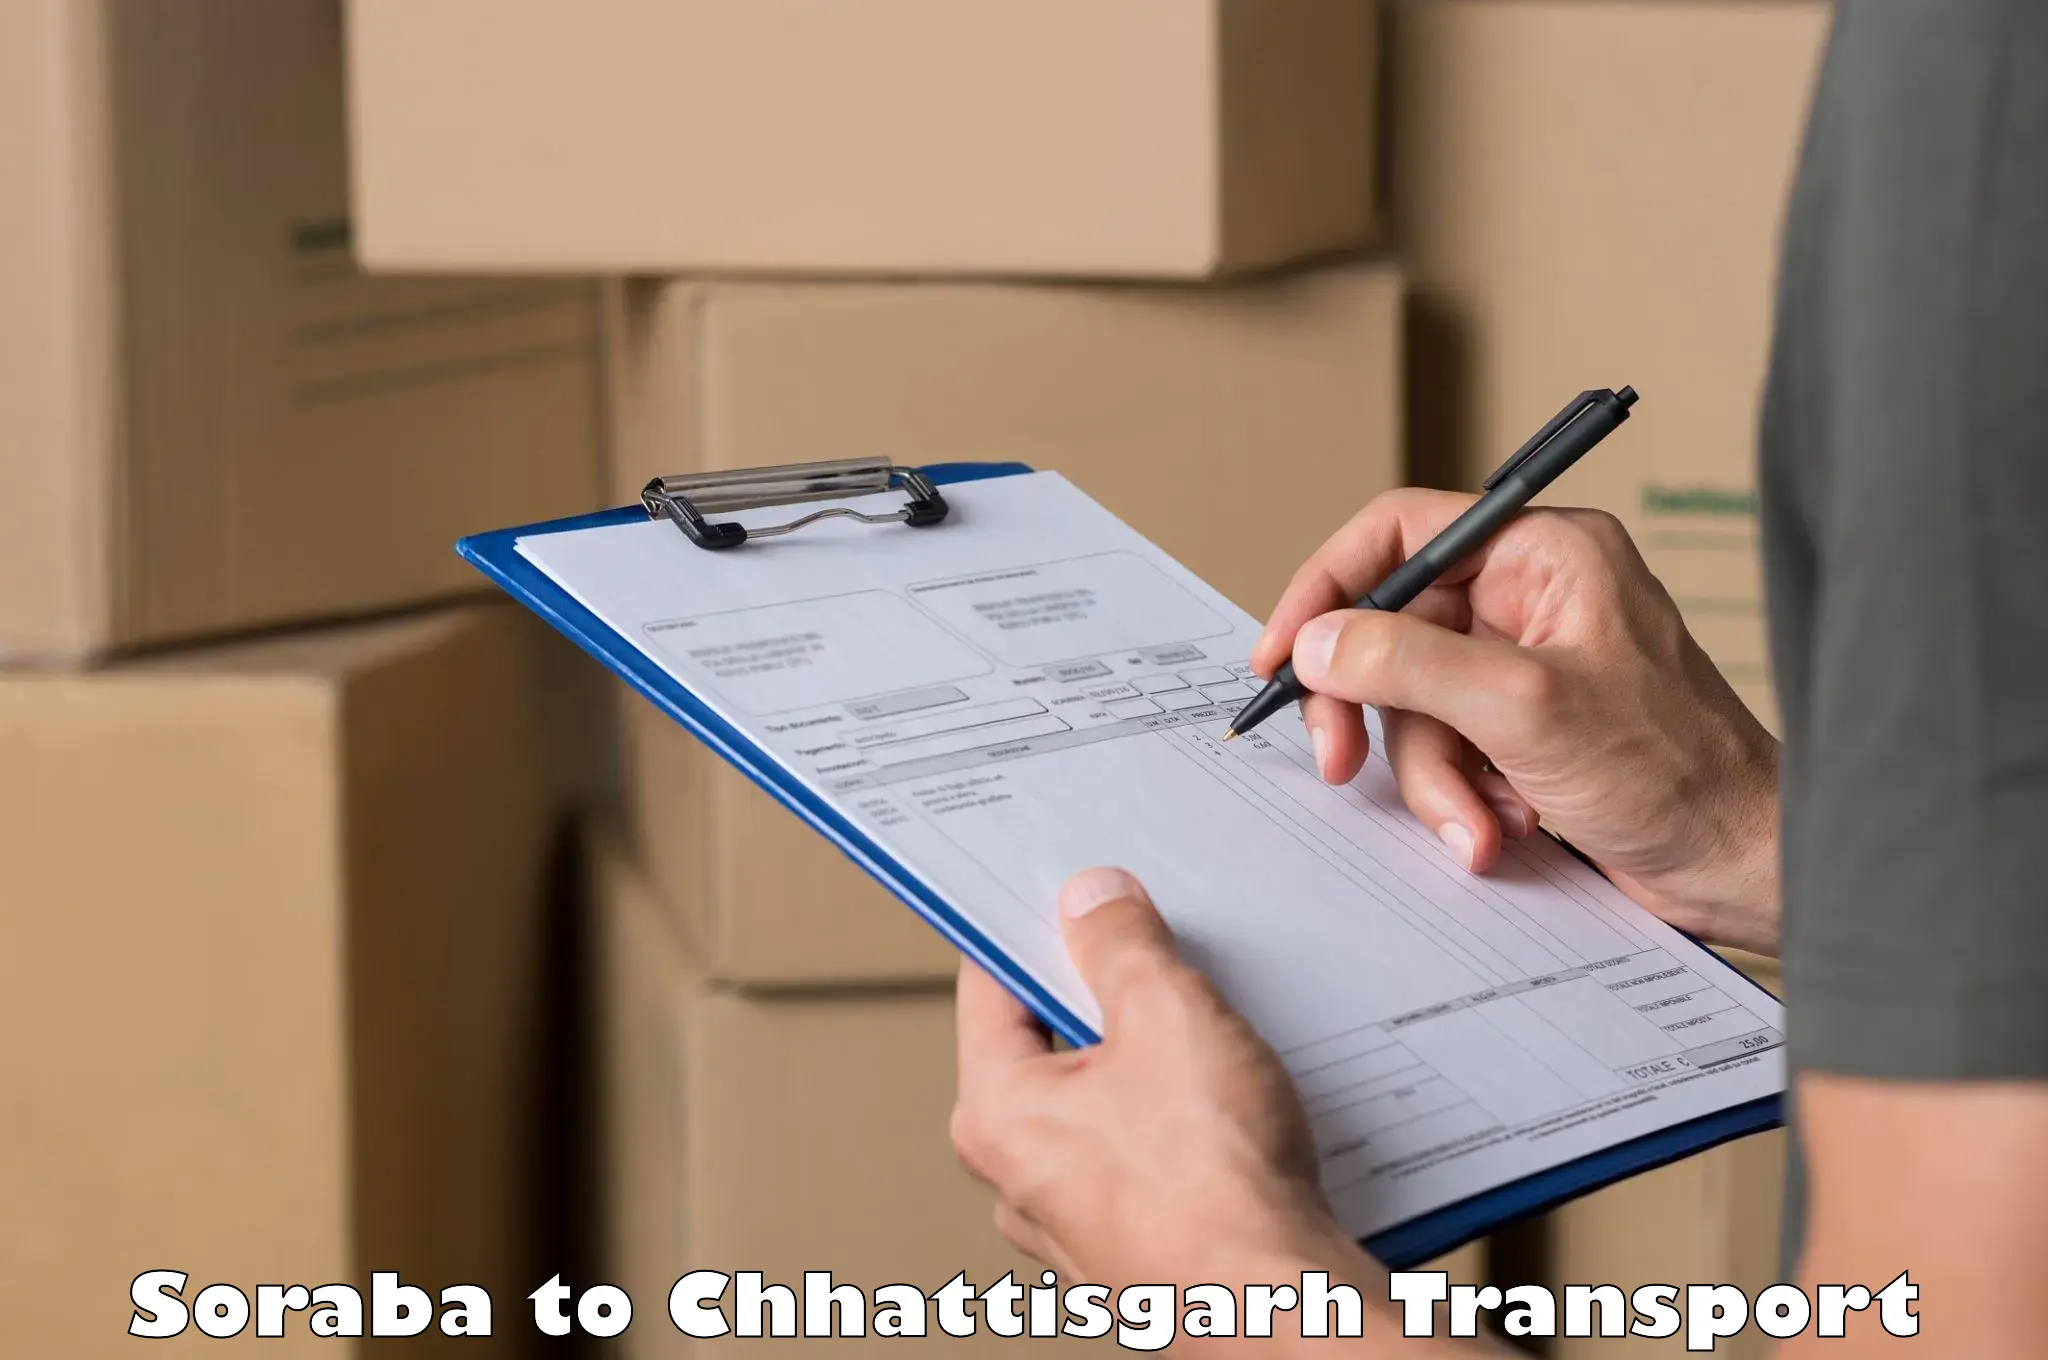 Container transport service Soraba to Chhattisgarh